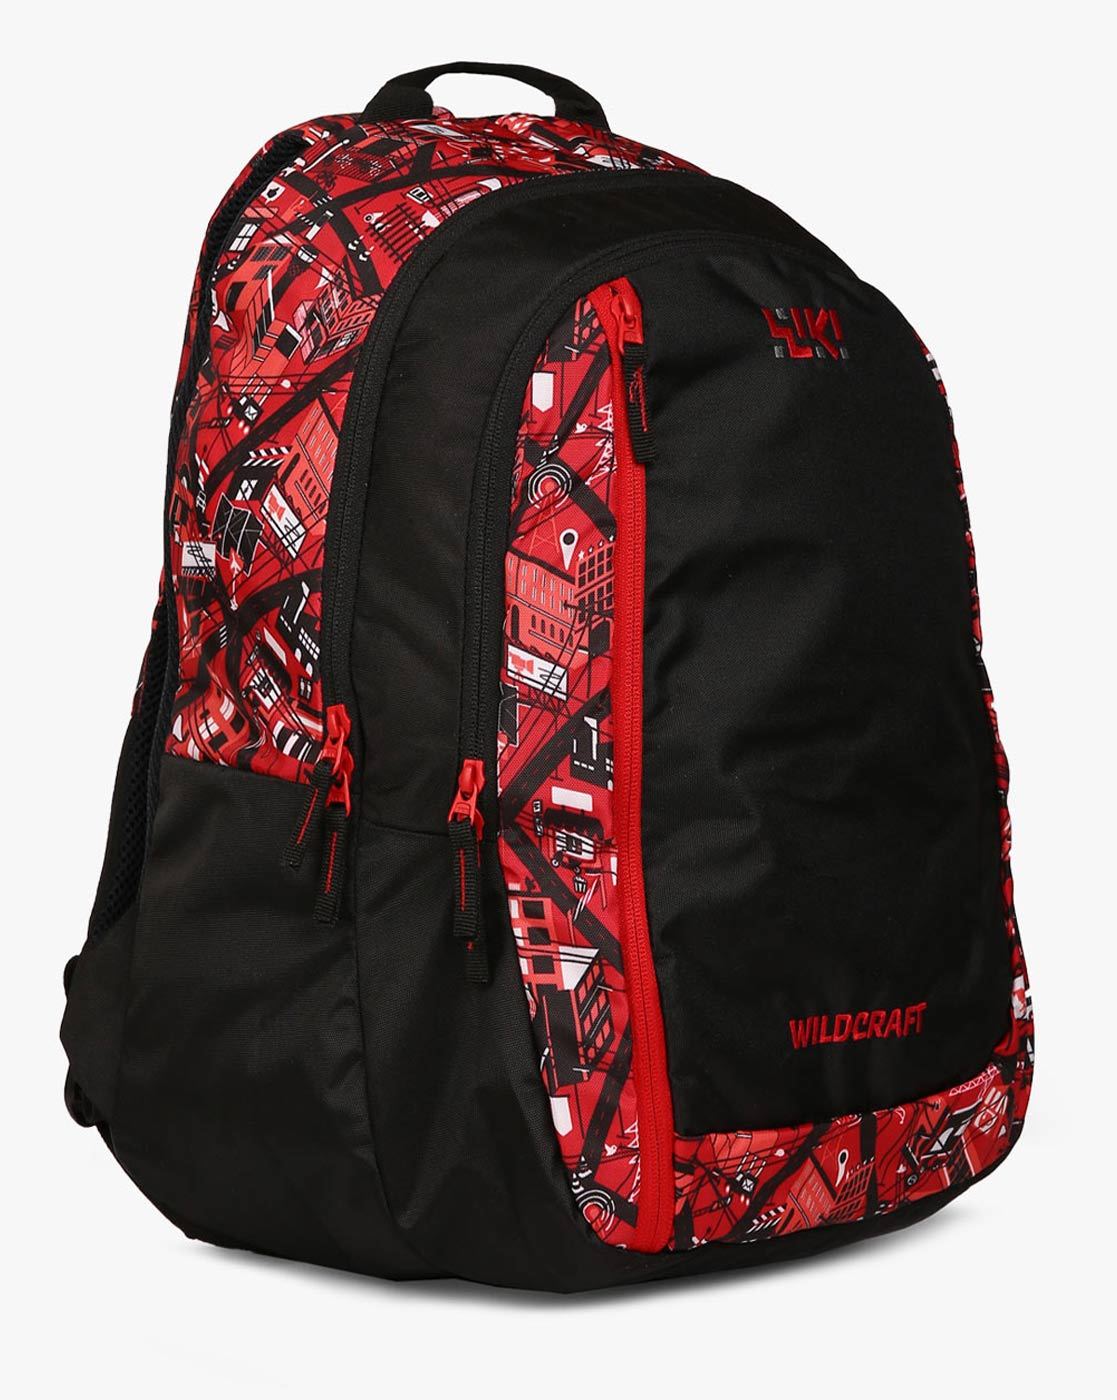 Buy Rucksack Bag Red Online  Wildcraft